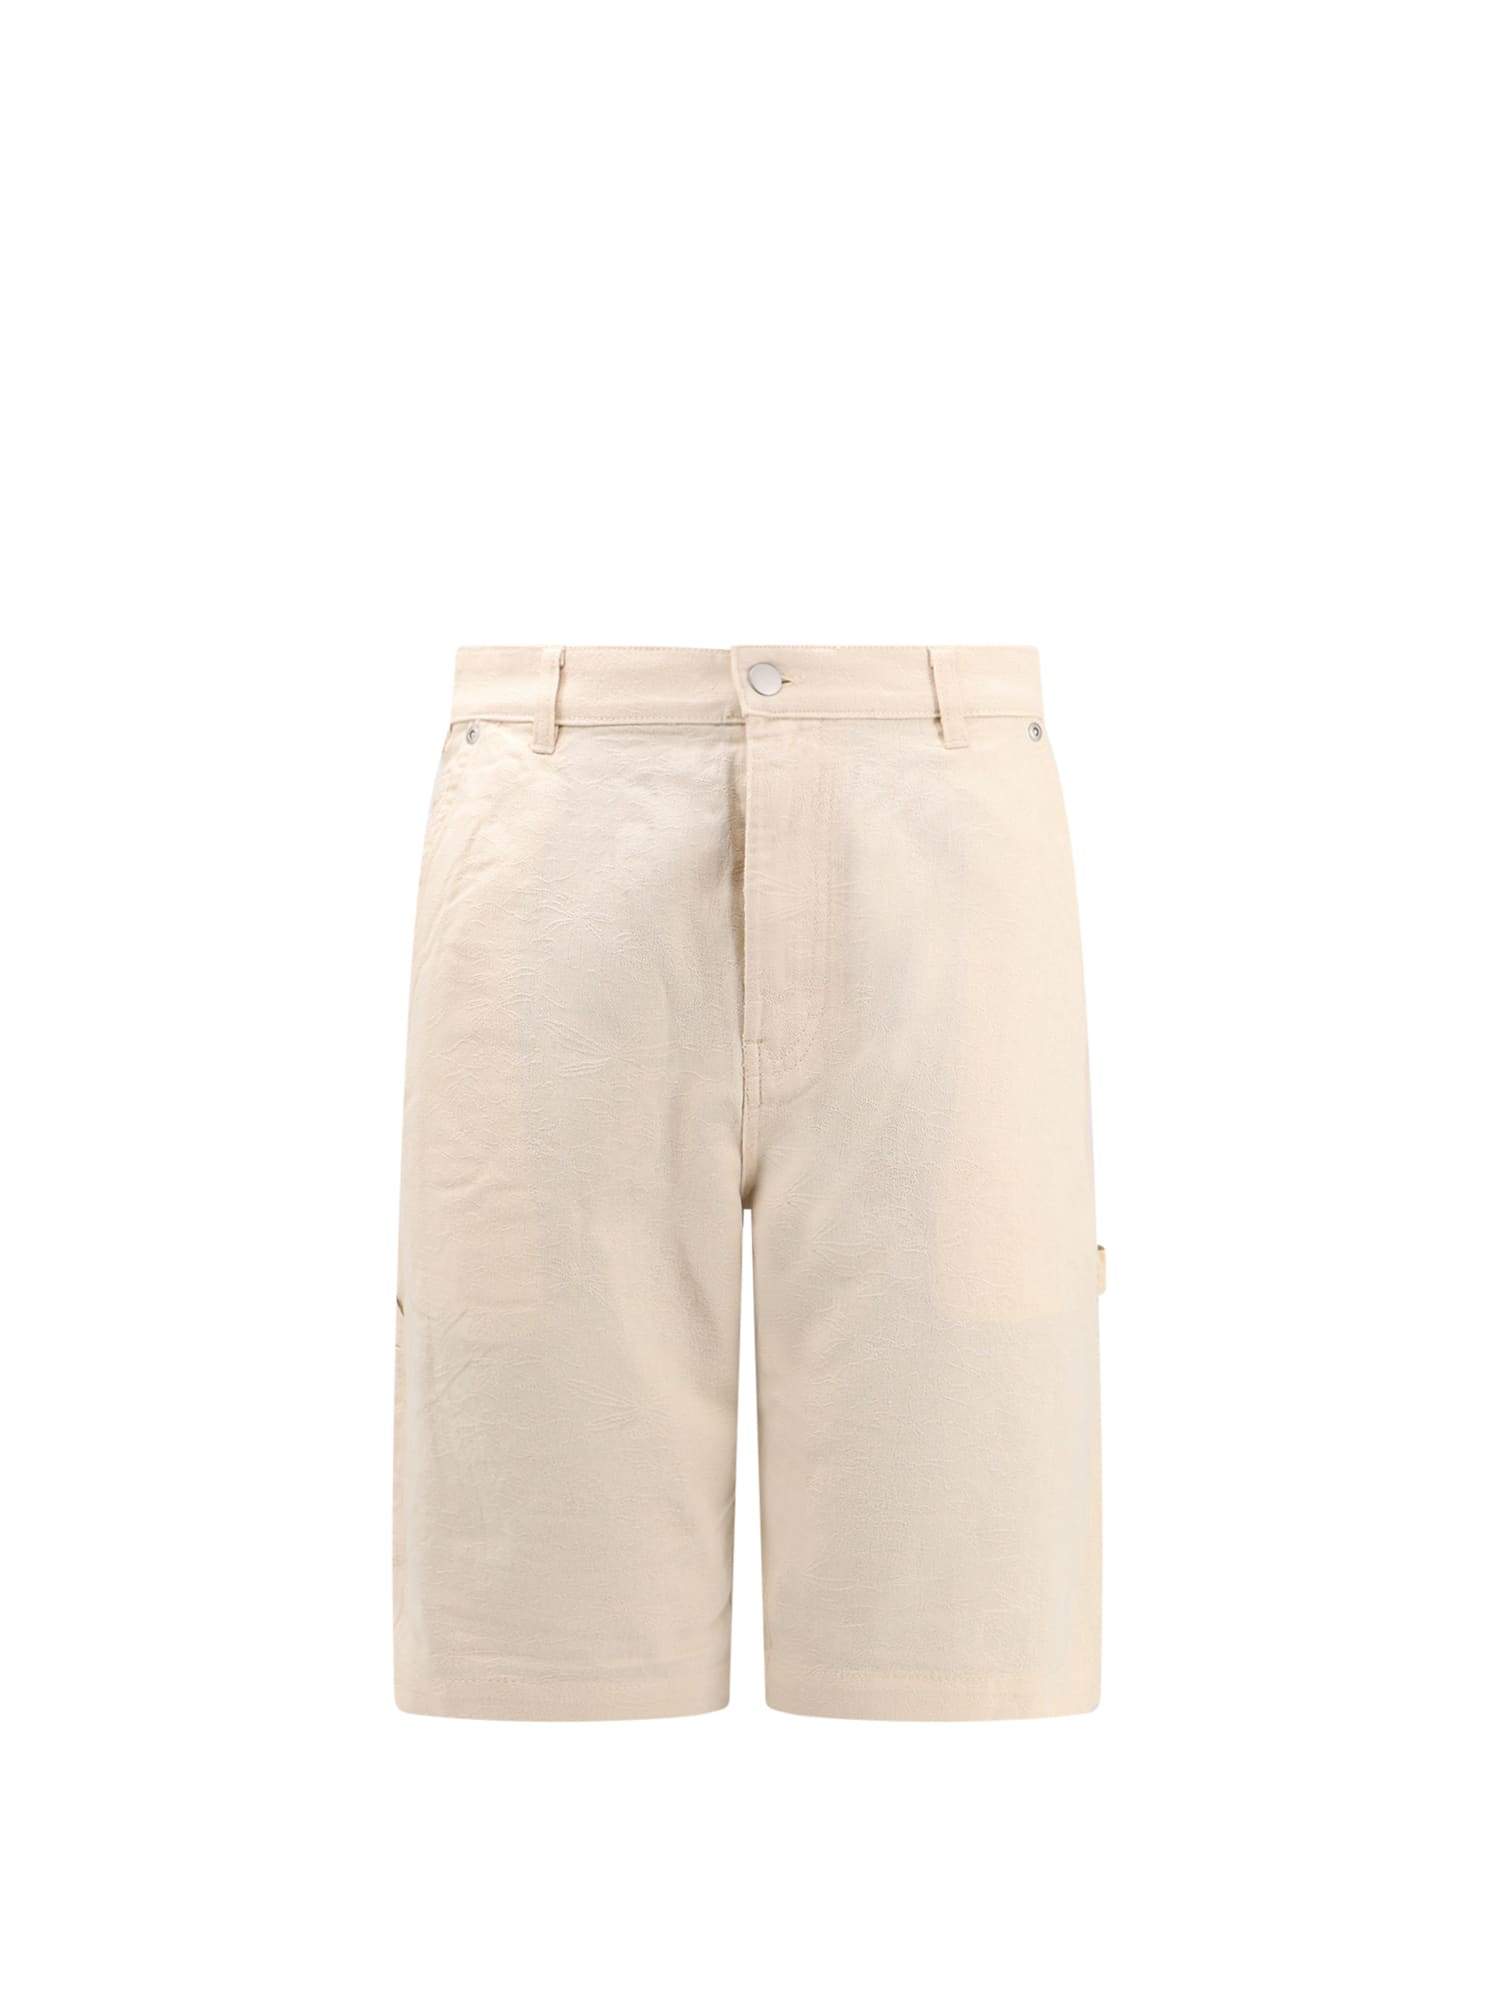 Dickies Bermuda Shorts - Beige - male - Size: Medium